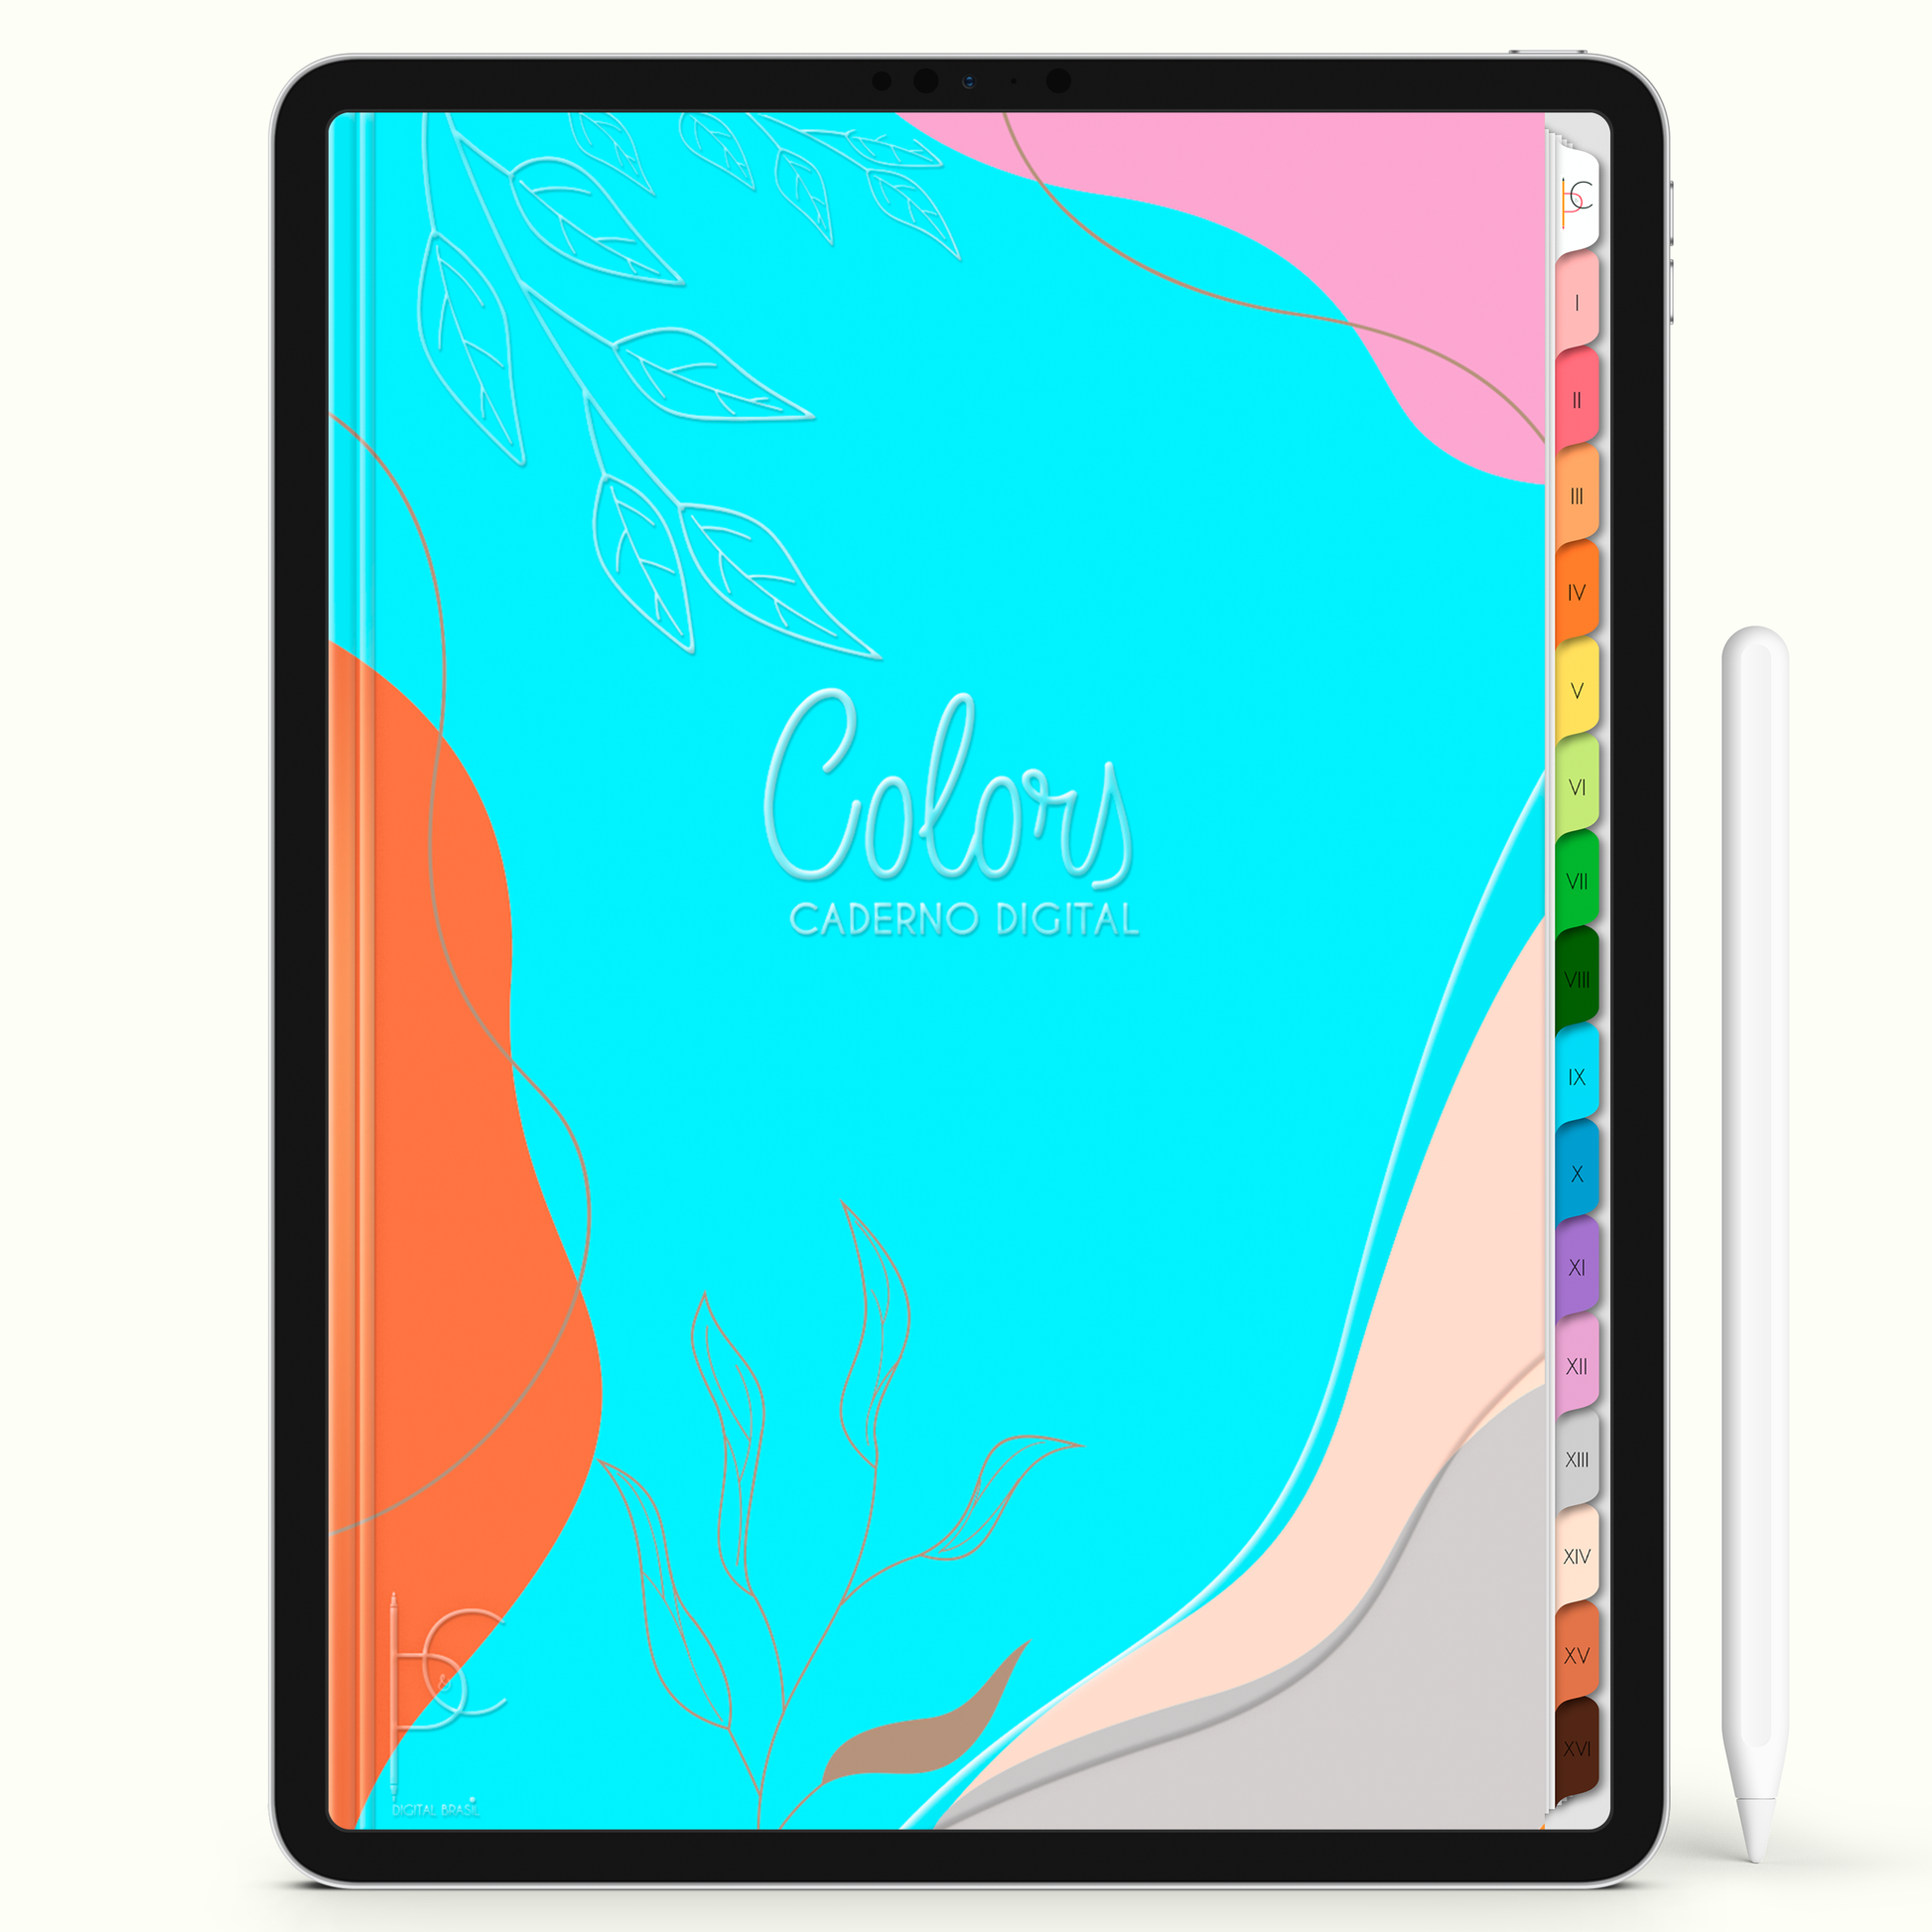 Caderno Digital Colors Belas Anotações 16 Matérias • Para iPad e Tablet Android • Download instantâneo • Sustentável